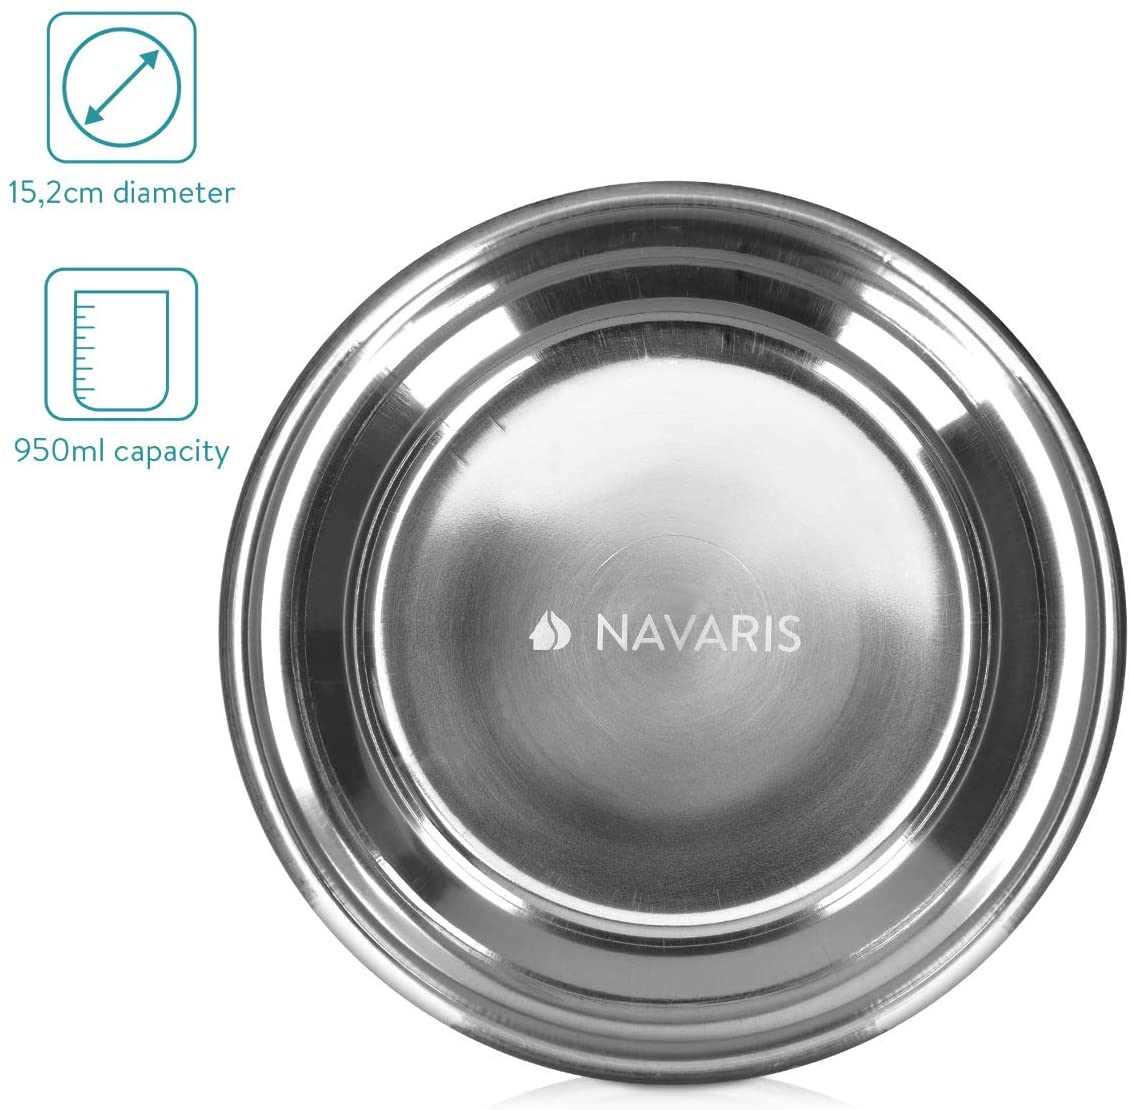  Navaris 2X Comederos para Mascotas de Acero Inoxidable - Cuenco para Comida o Agua para Perros y Gatos Antideslizante - diseño mármol 